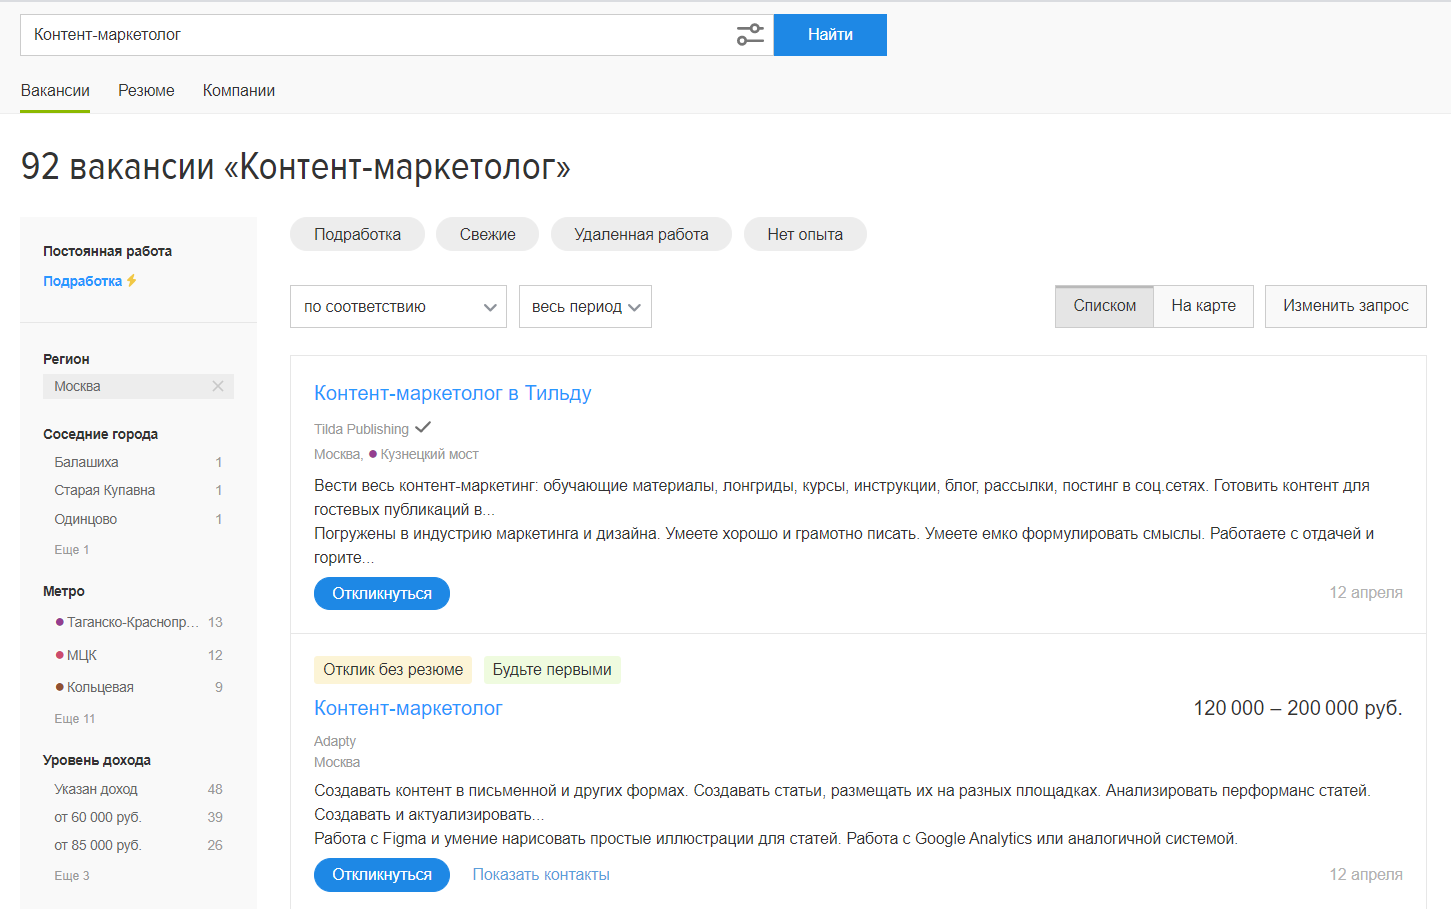 Вакансий для контент-маркетолога на hh.ru на порядок меньше, чем для копирайтера, но такие предложения стоит поискать в других источниках – в чатах Телеграма, группах во ВКонтакте и Фейсбуке*